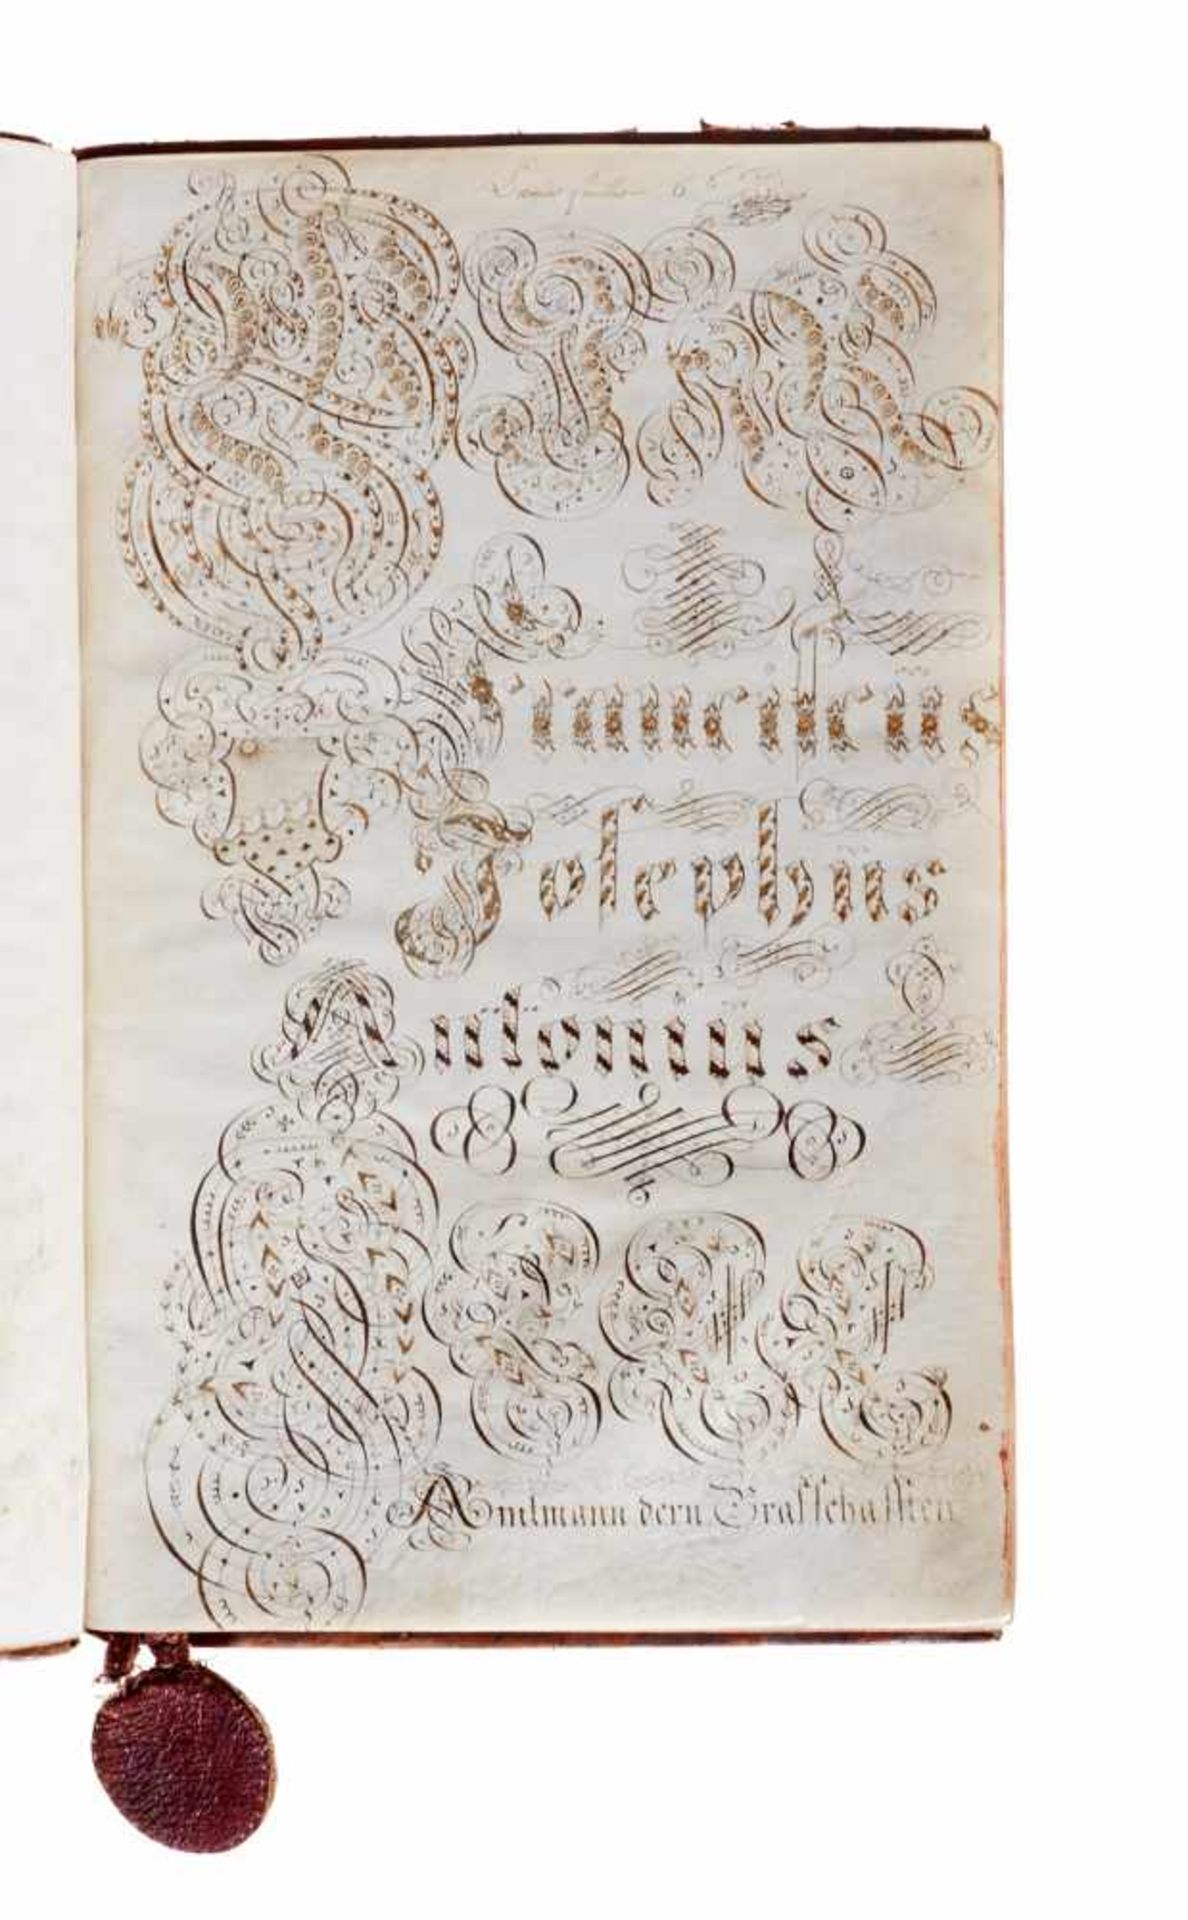 "St. Johannser Commenthurey Terain von Basel zu HelfrantzkirchDe Anno 1770". Deutsche Handschrift - Bild 3 aus 4